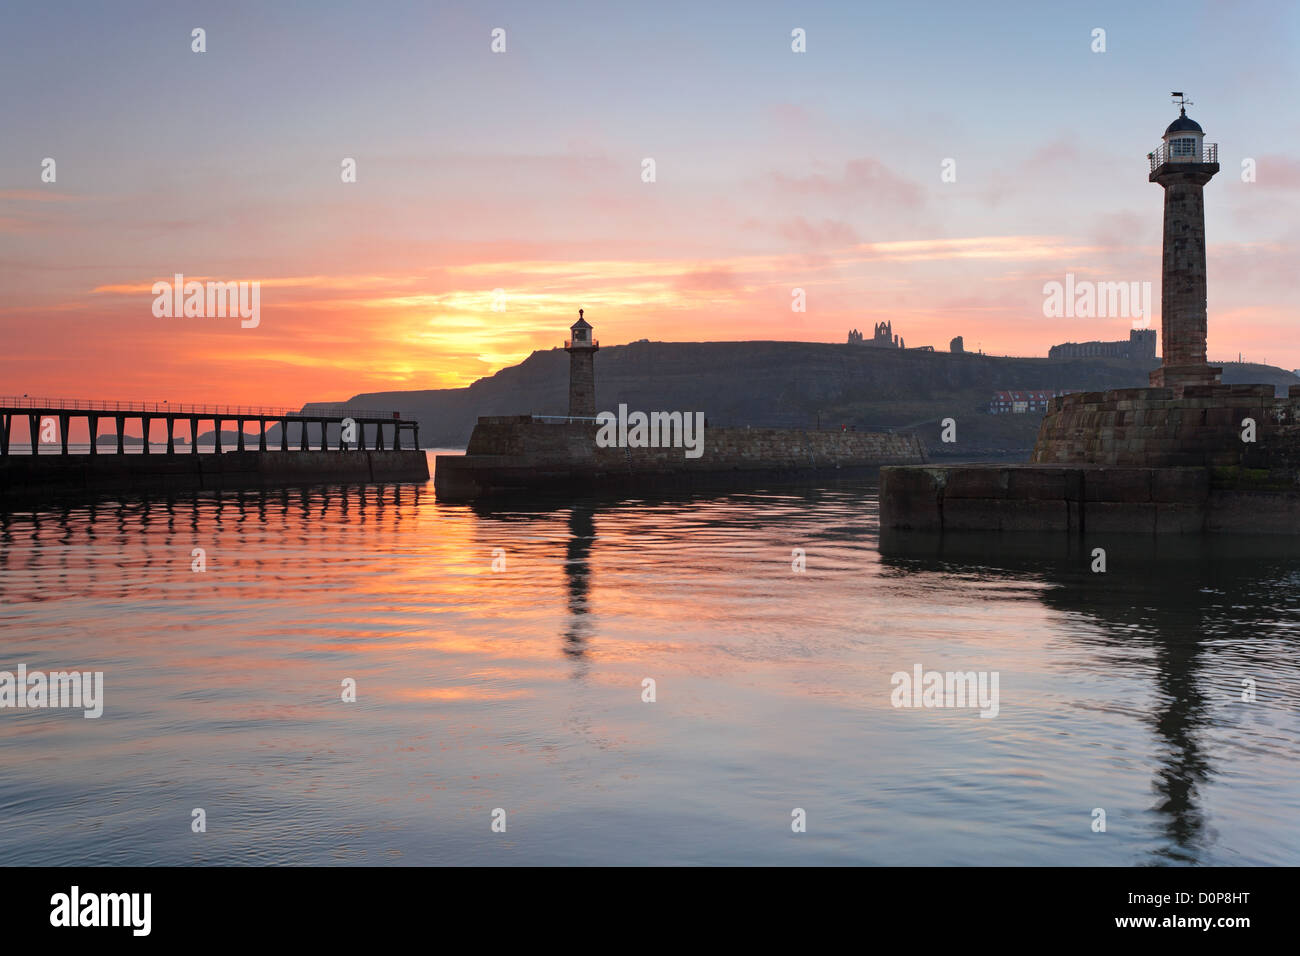 Le port de Whitby dans le Yorkshire du Nord, Angleterre, avec le lever du soleil illuminant le ciel. Banque D'Images